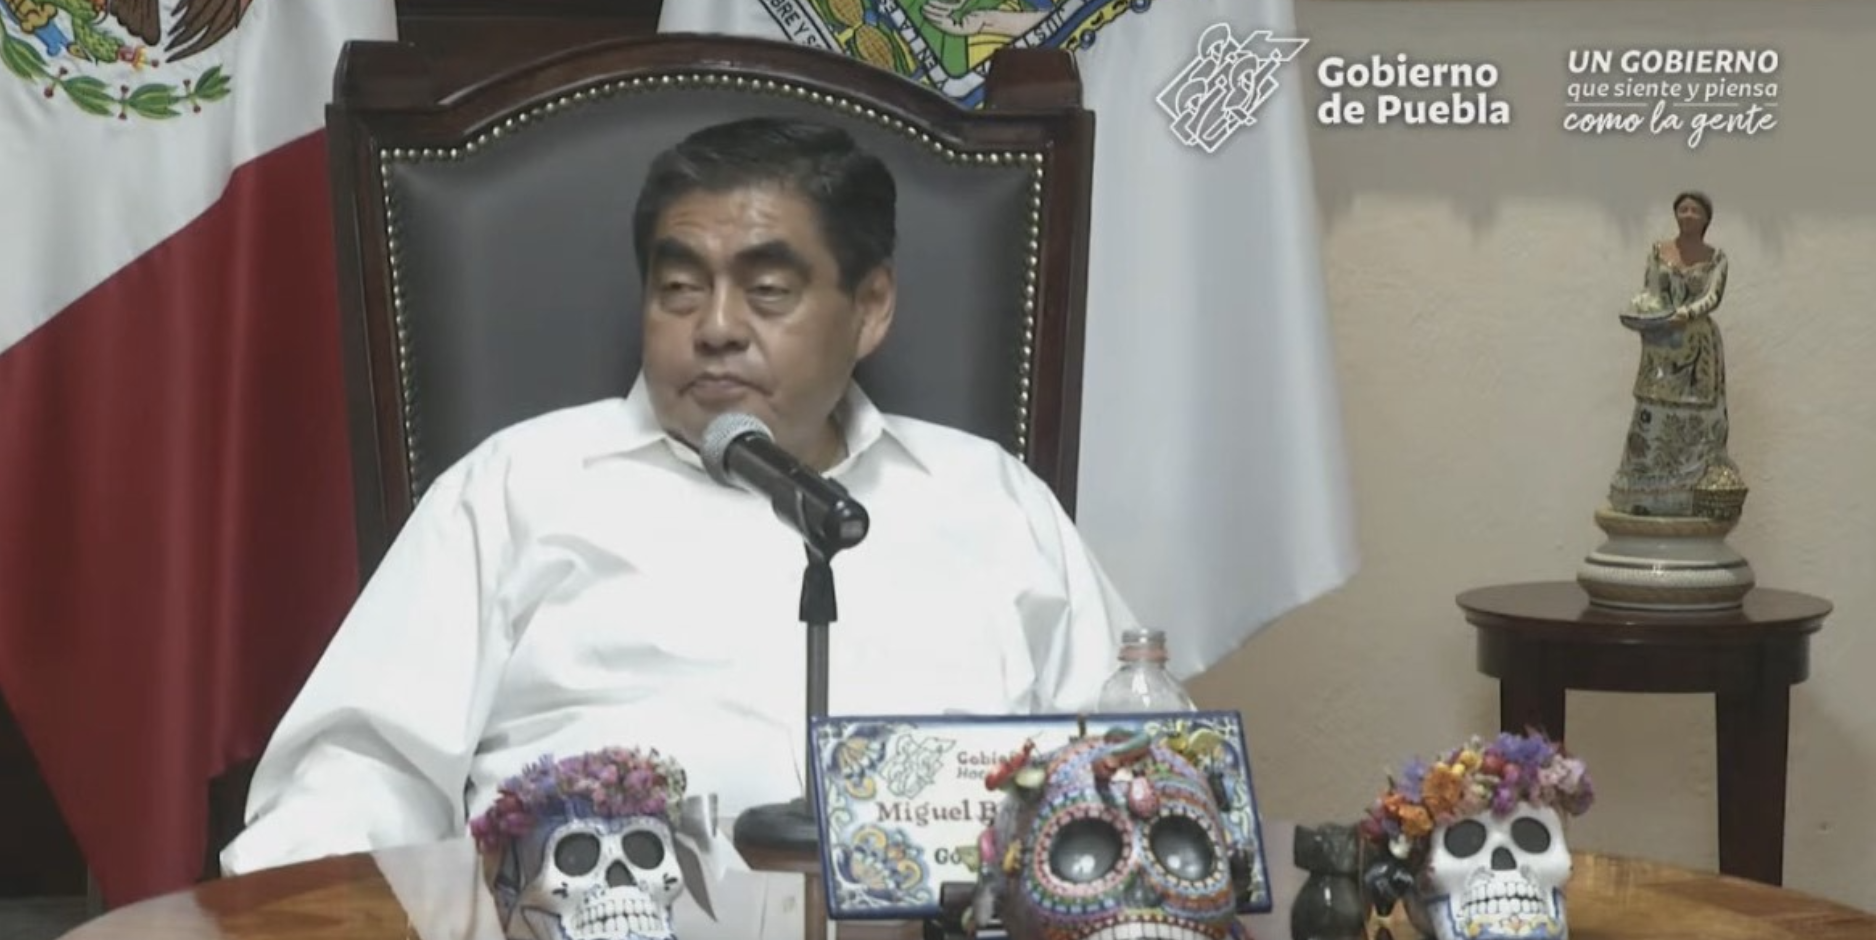 Video desde Puebla: Gobernador Barbosa confirmó que Eukid Castañon recibió una sentencia de siete años de prisión